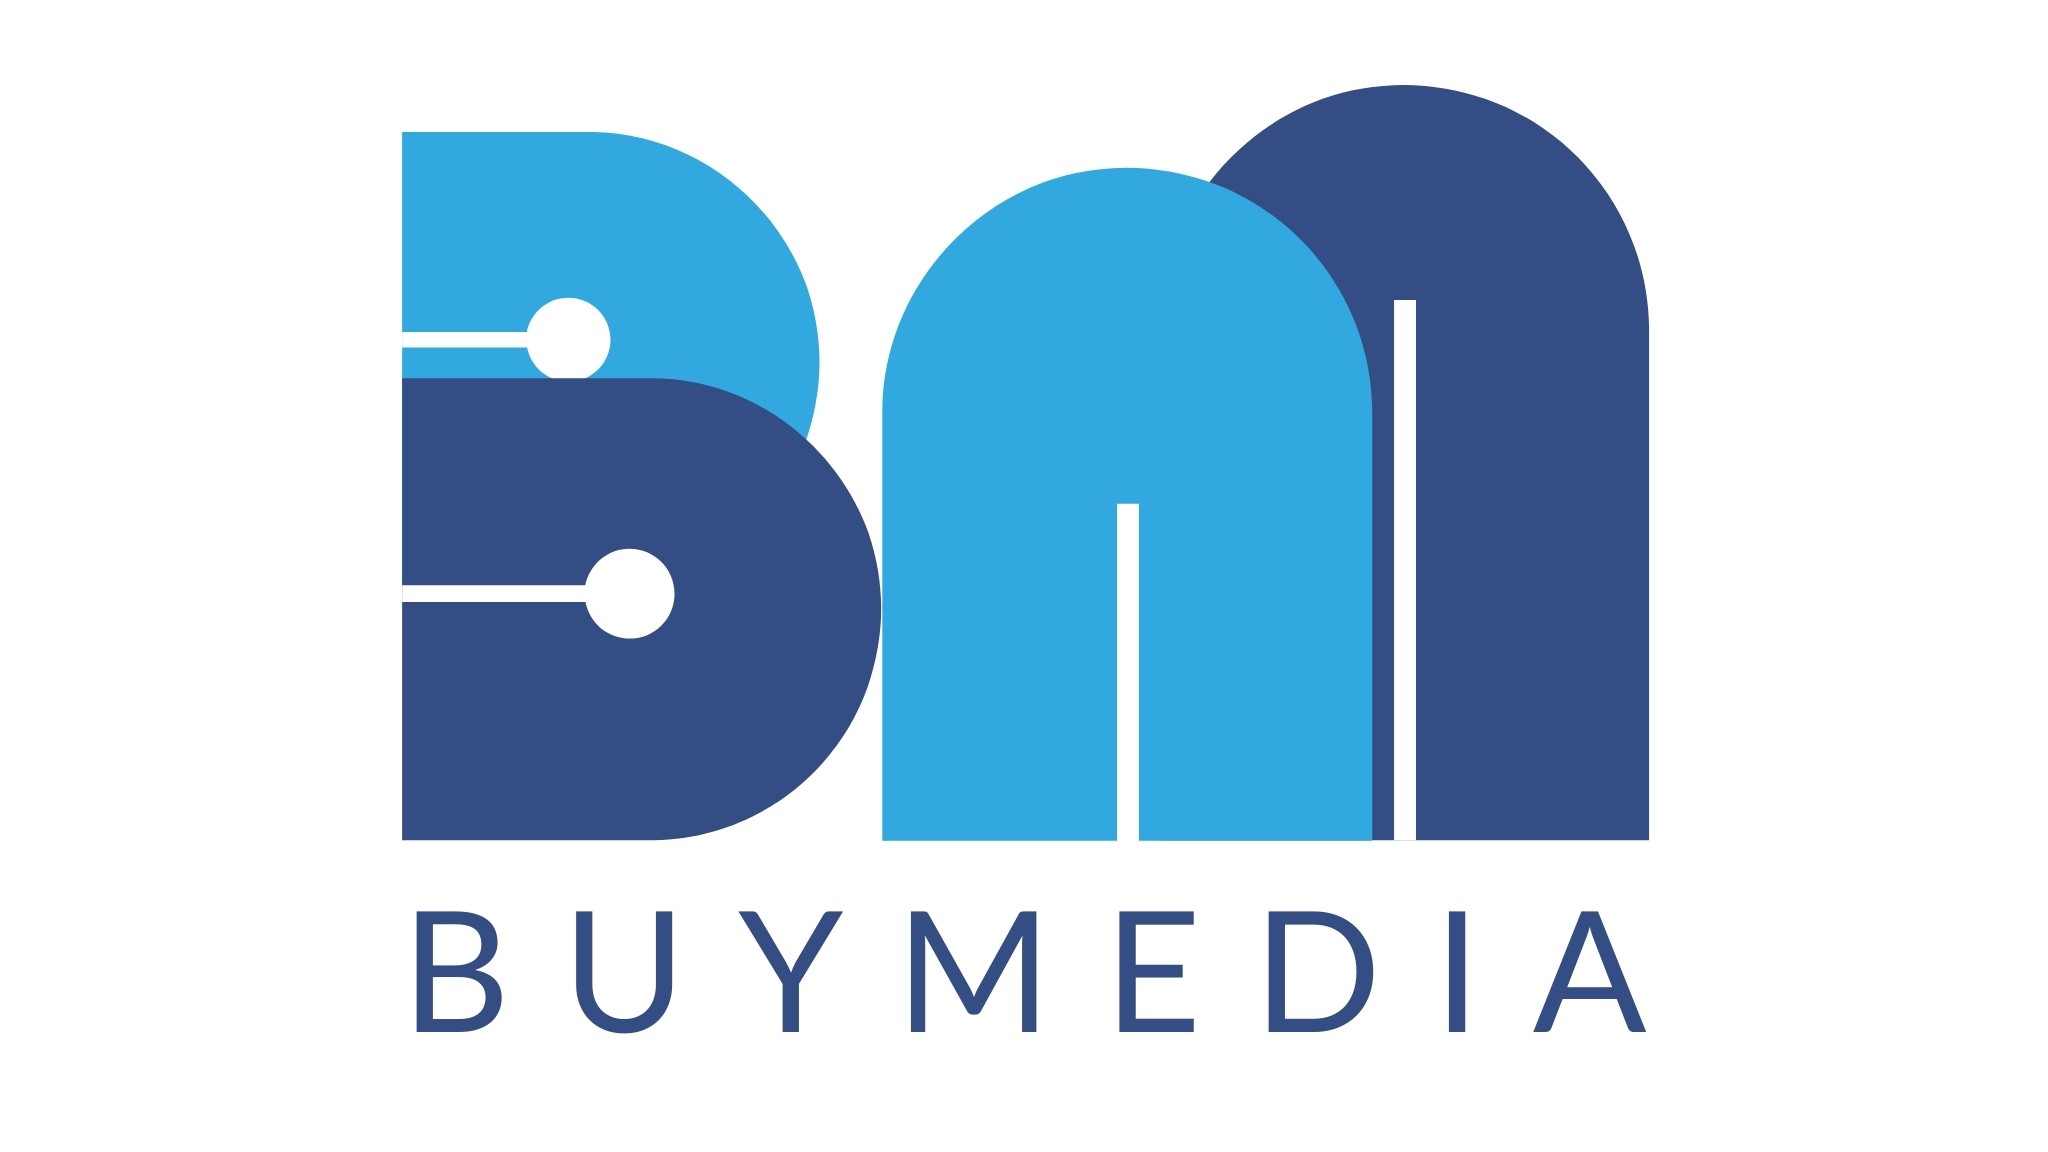 Buymedia